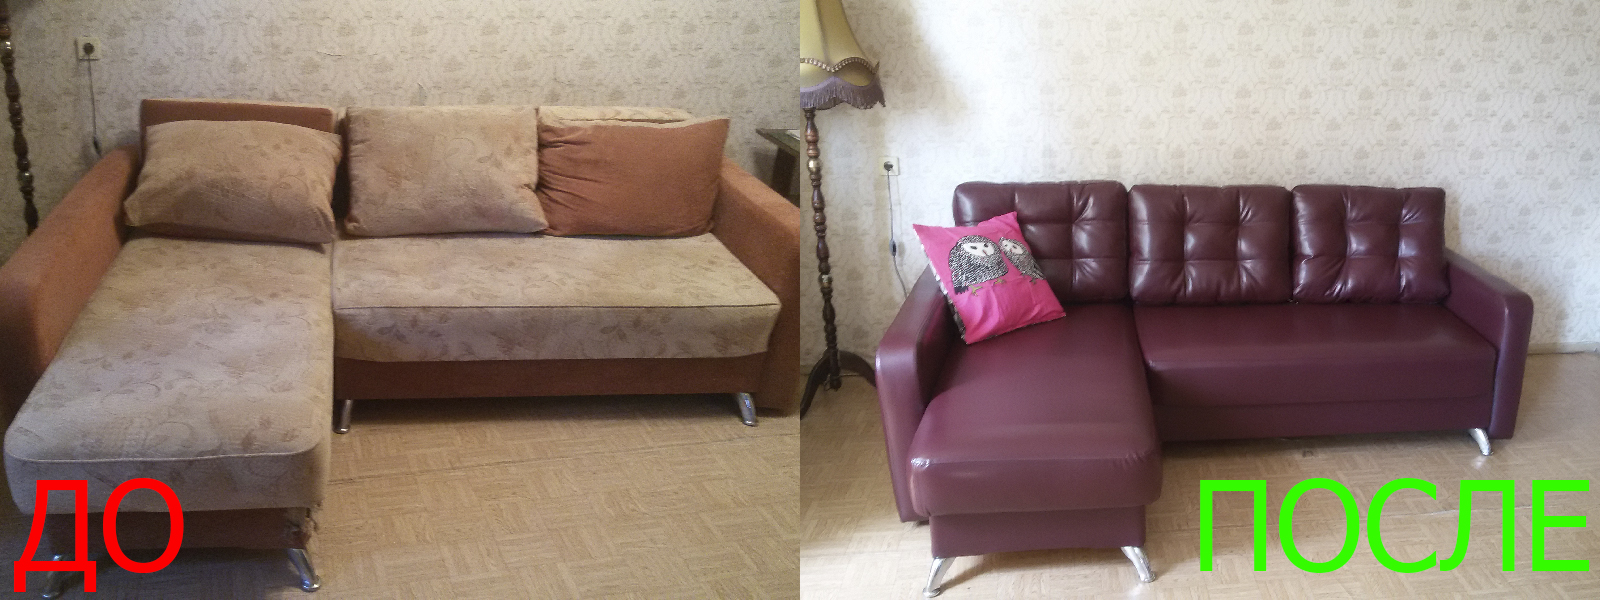 Перетяжка углового дивана в Казани от опытных мастеров компании MebelProfi - 100% гарантия